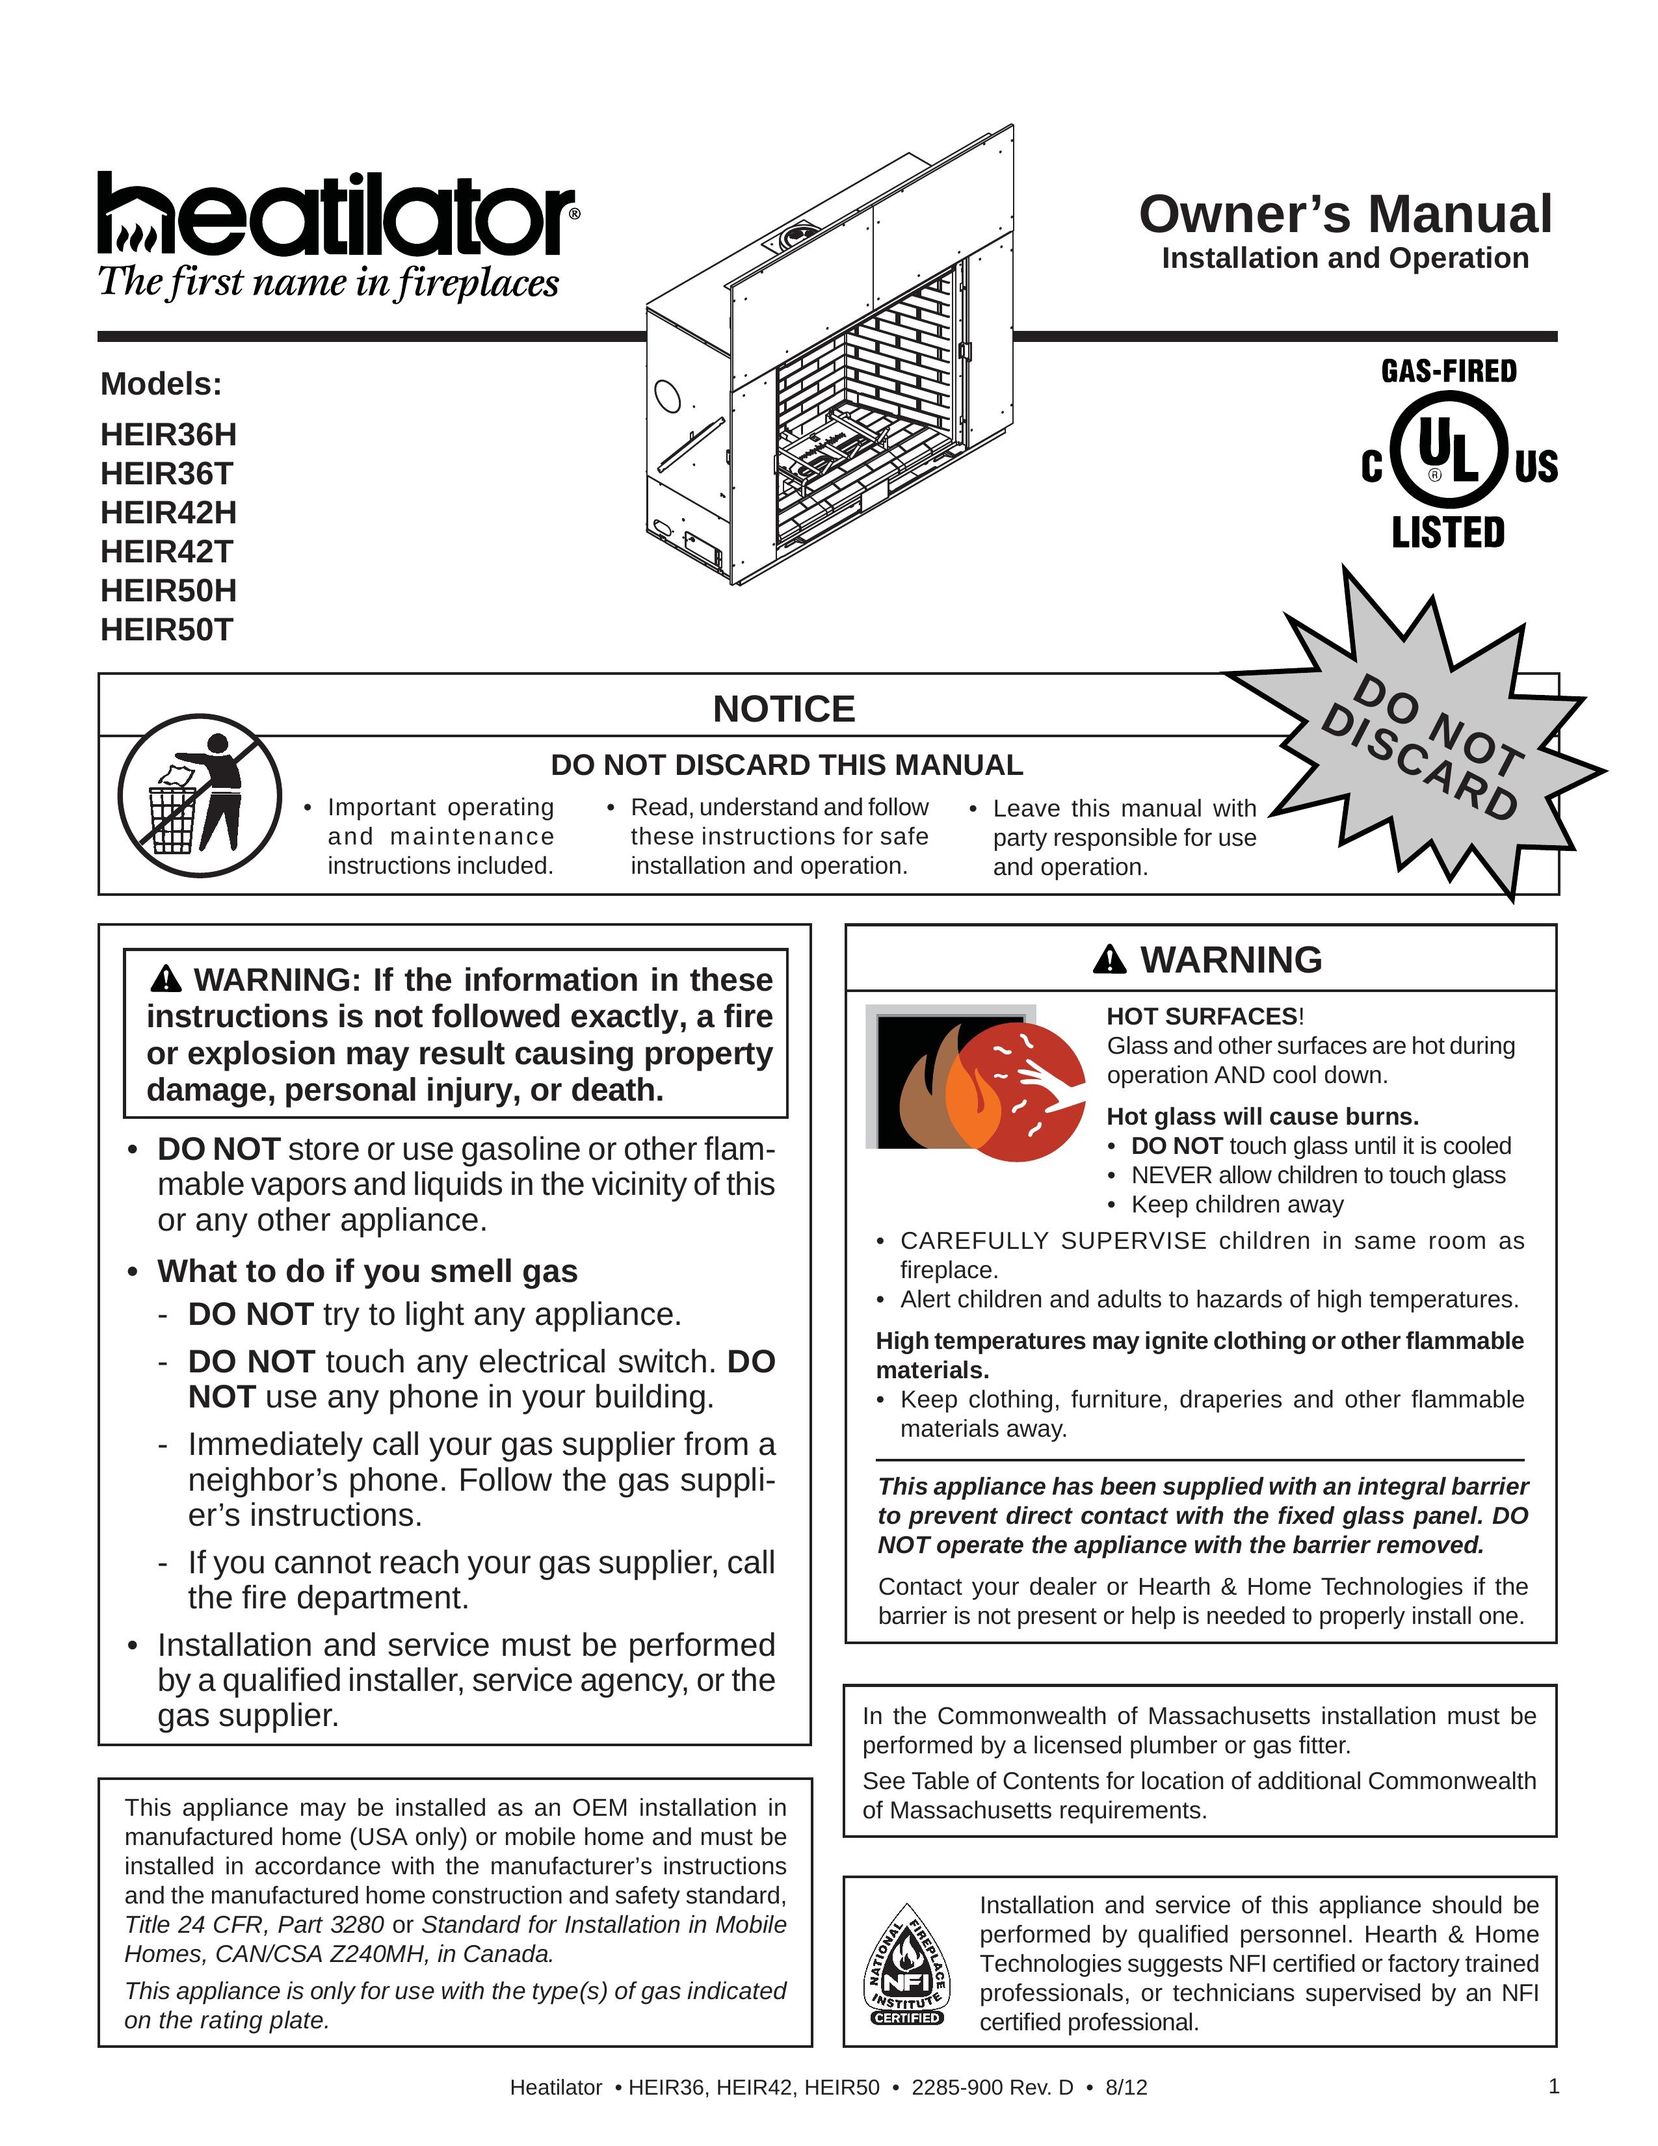 Heatiator HEIR36T Indoor Fireplace User Manual